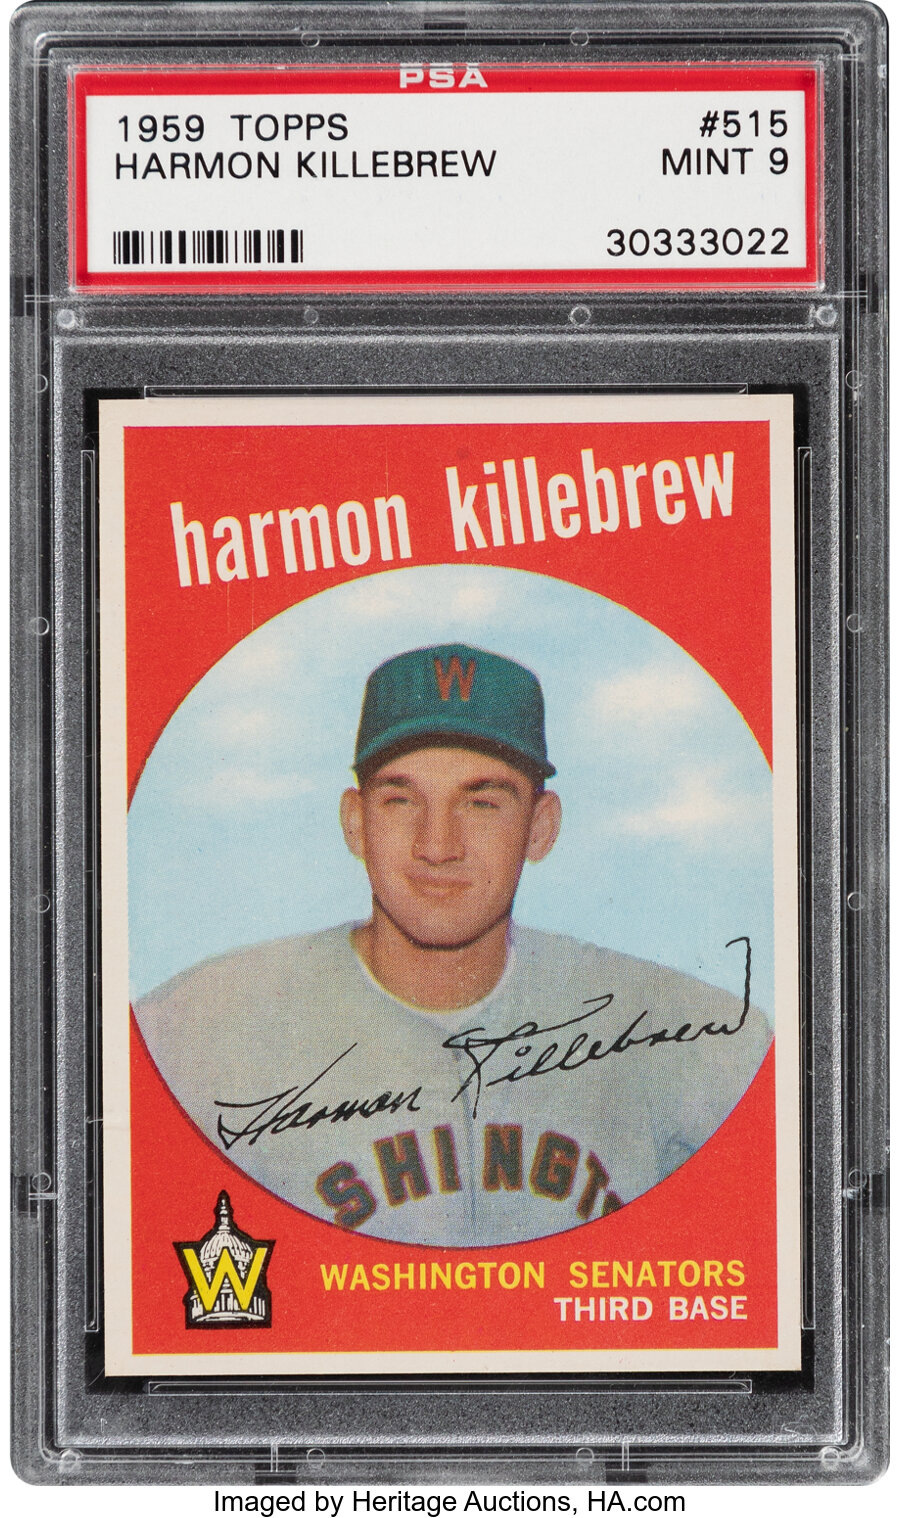 1959 Topps Harmon Killebrew #515 PSA Mint 9 - None Higher!